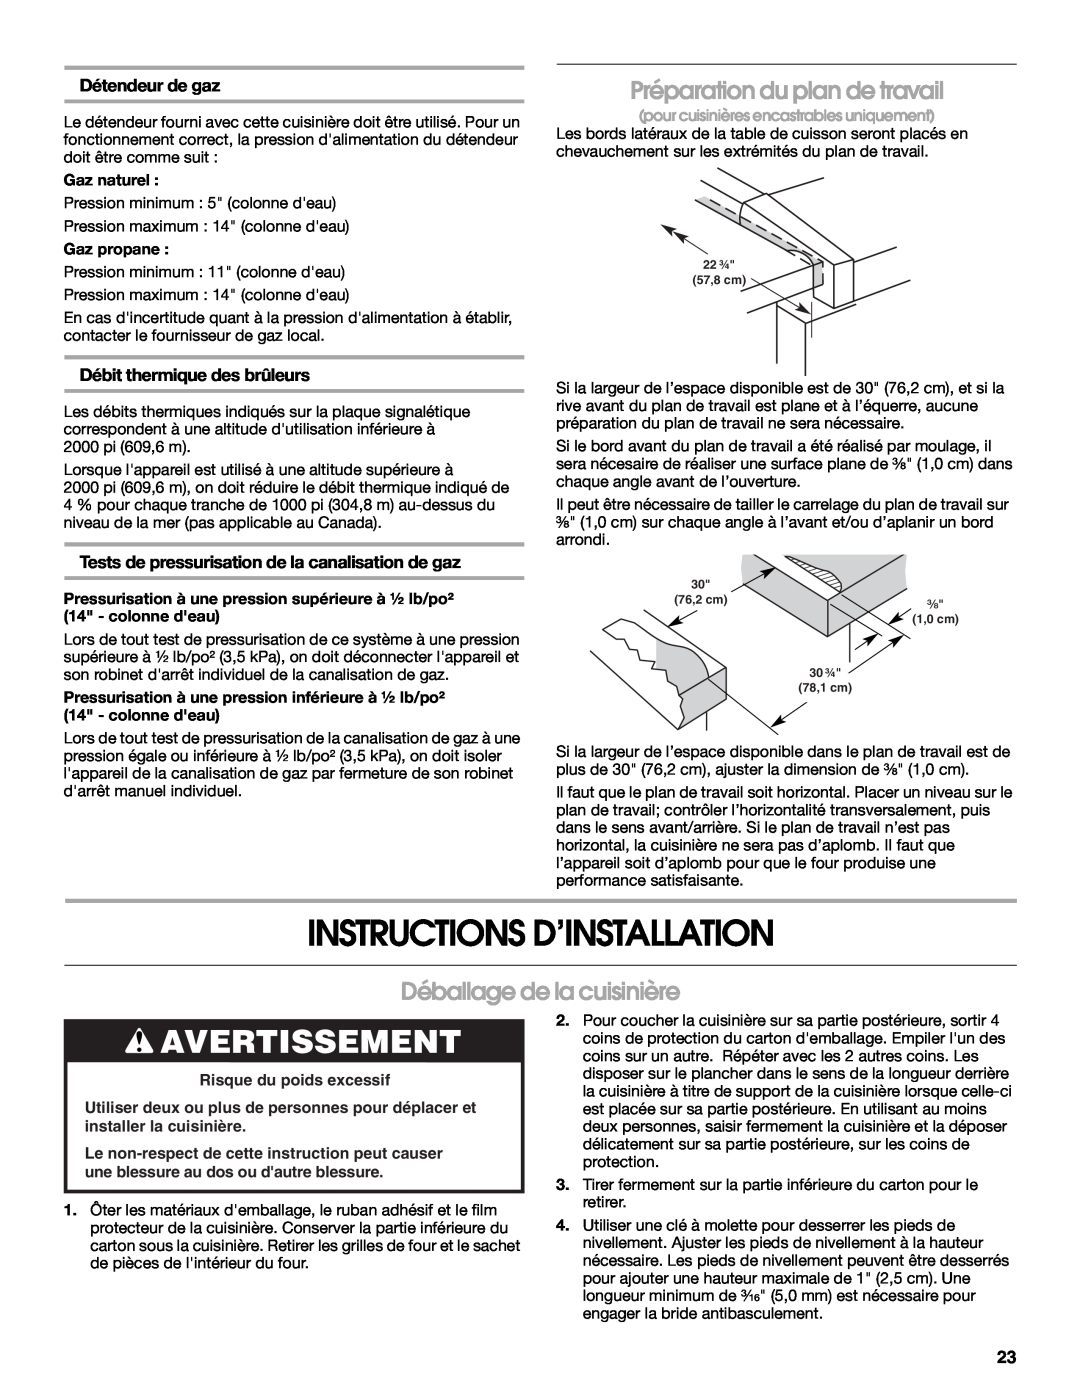 Whirlpool Slide-In Electric Ranges Instructions D’Installation, Préparation du plan de travail, Déballage de la cuisinière 